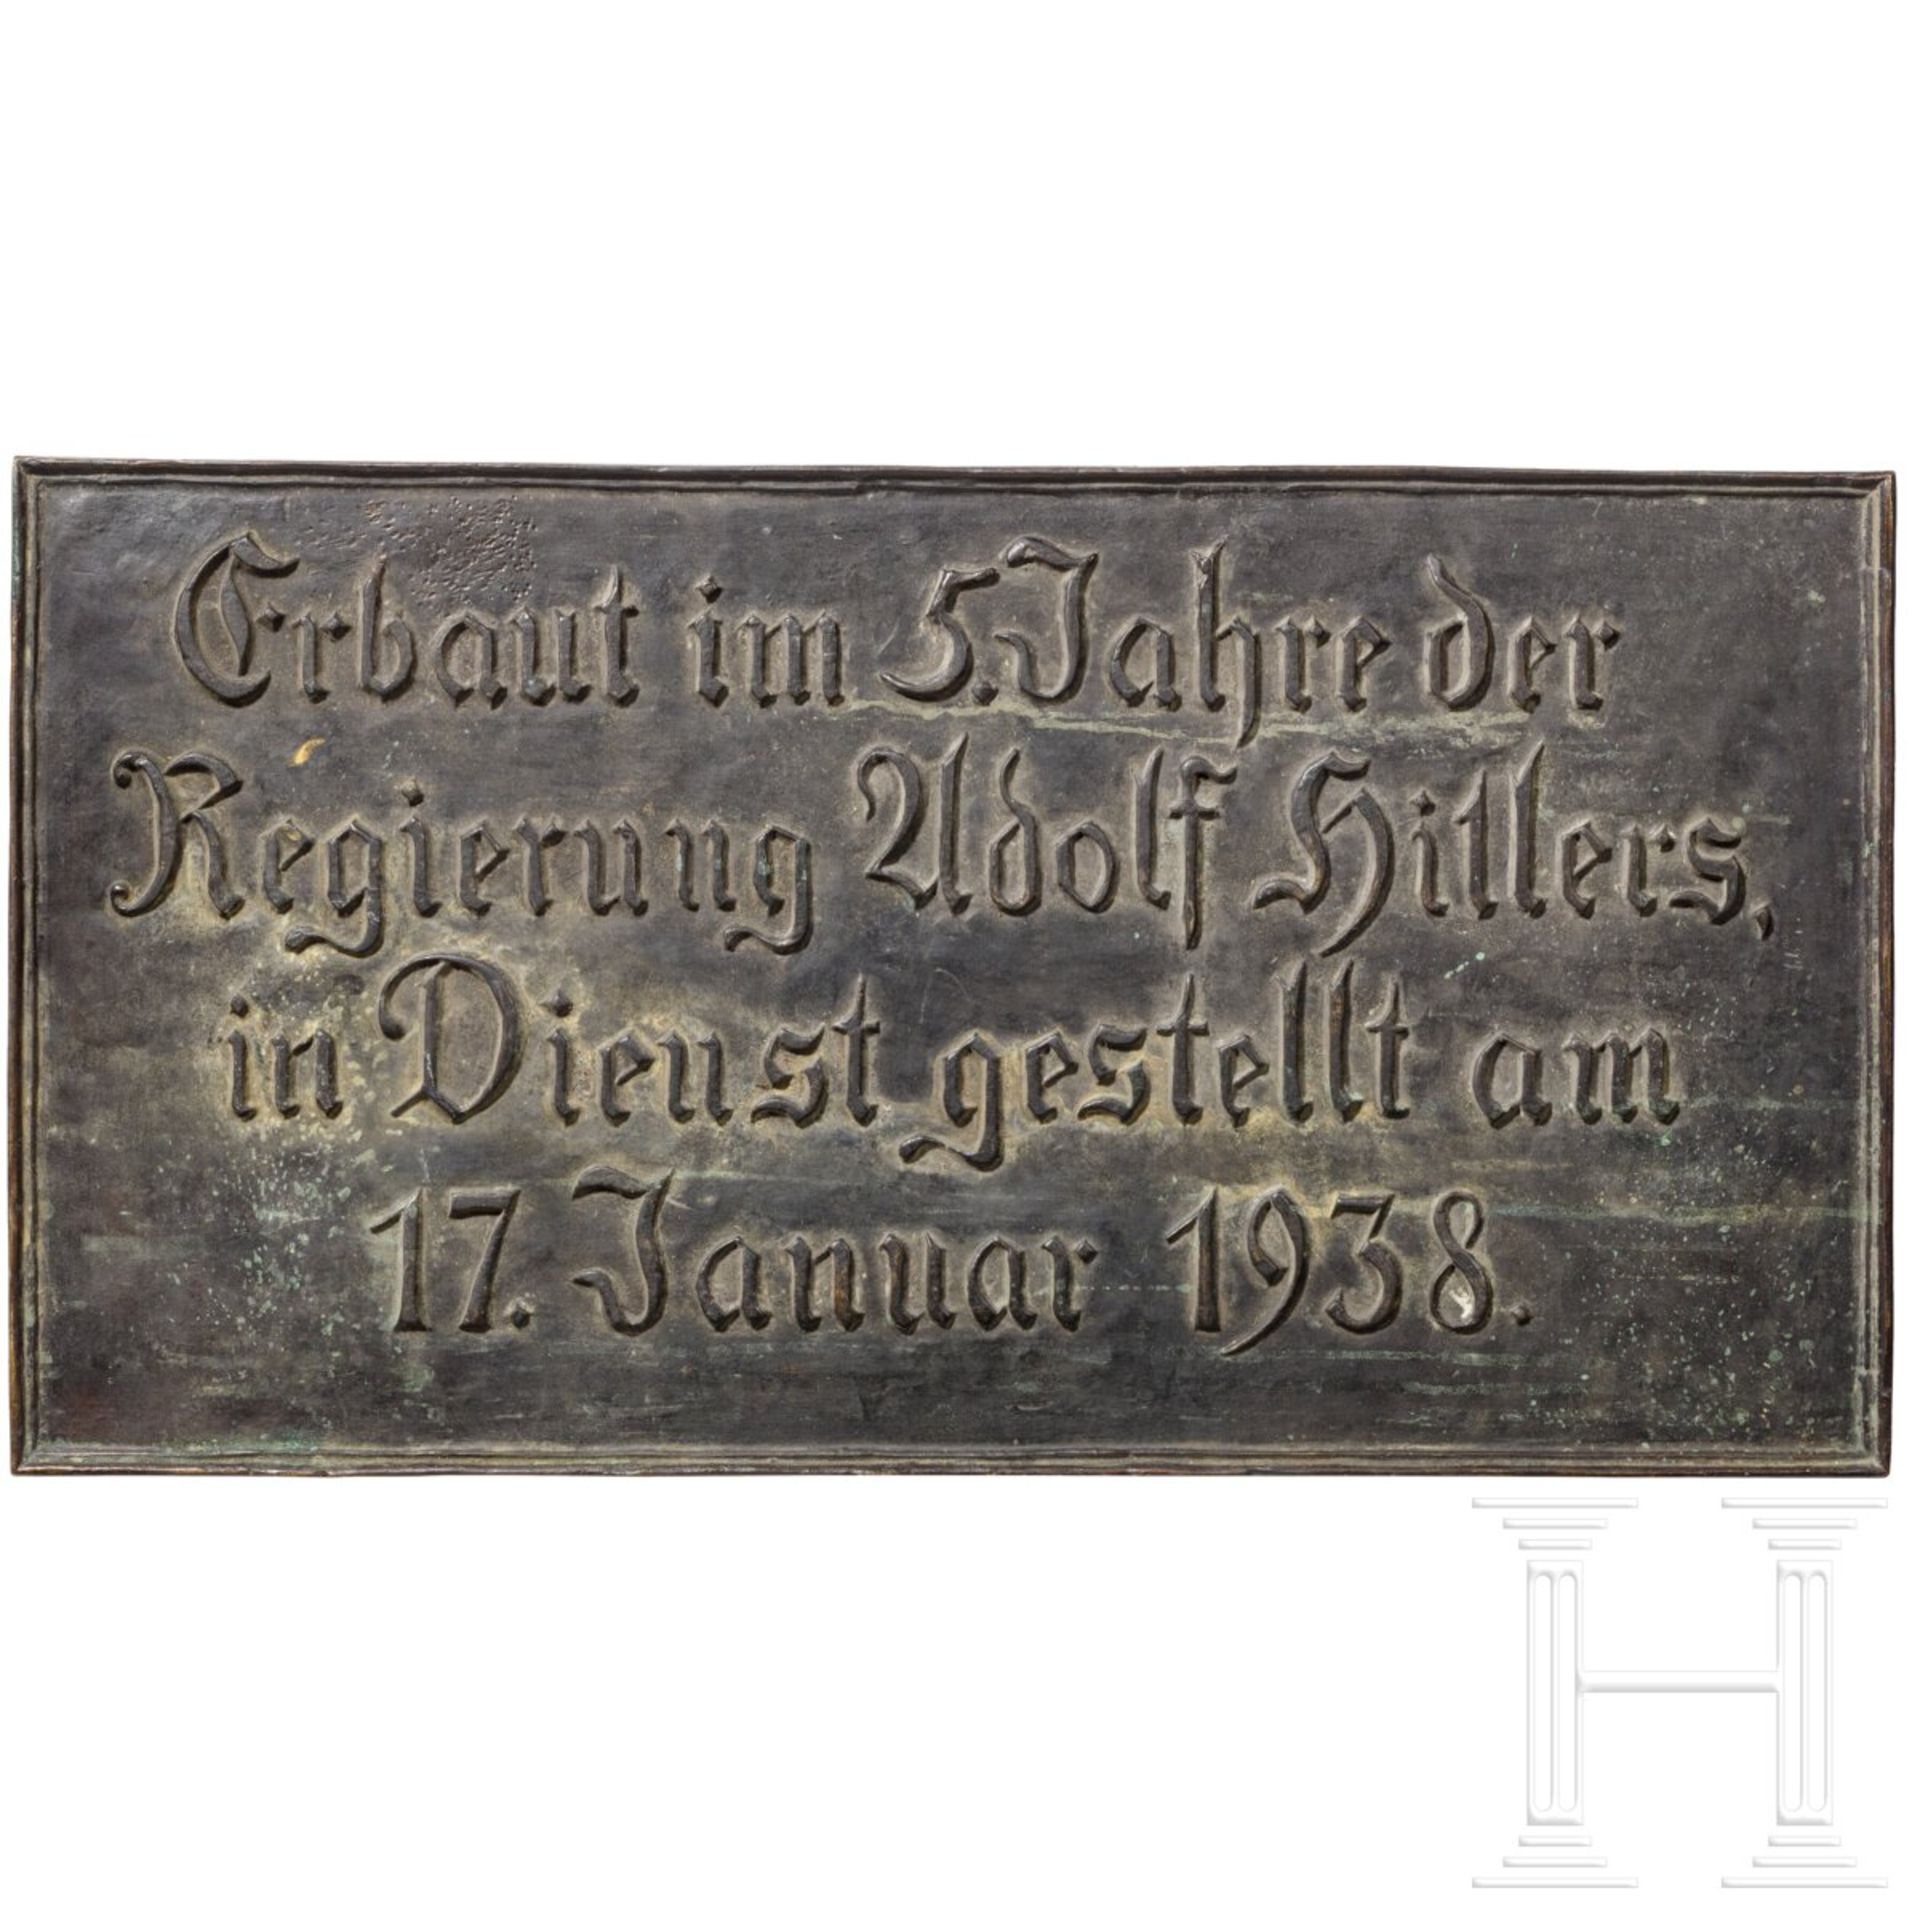 Große Bronzetafel der Polizei-Skischule in Hindelang, Bad Oberdorf, "in Dienst gestellt am 17. Janua